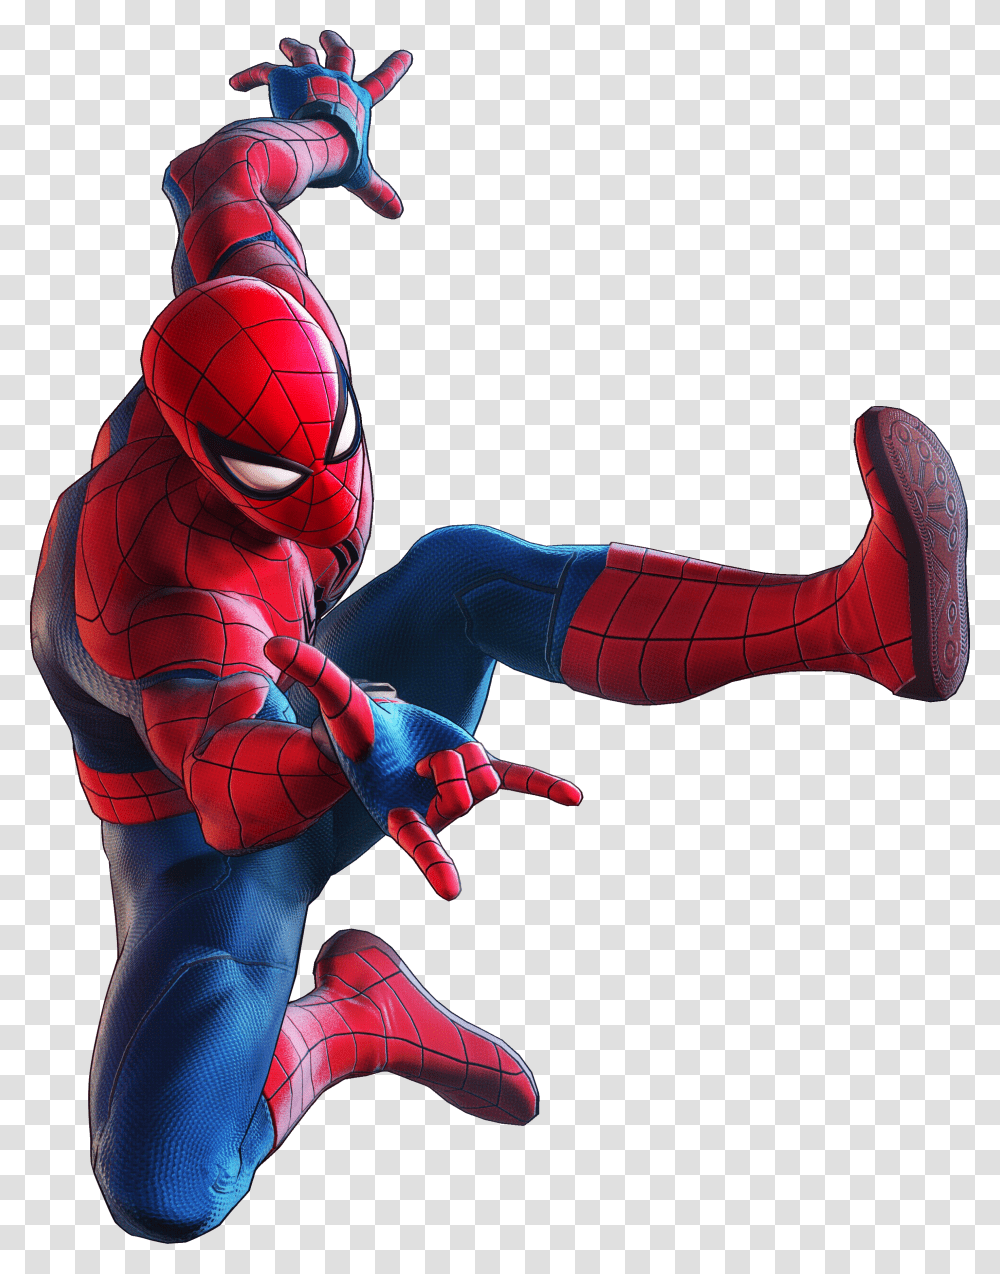 Marvel Ultimate Alliance 3 Spider Man Transparent Png